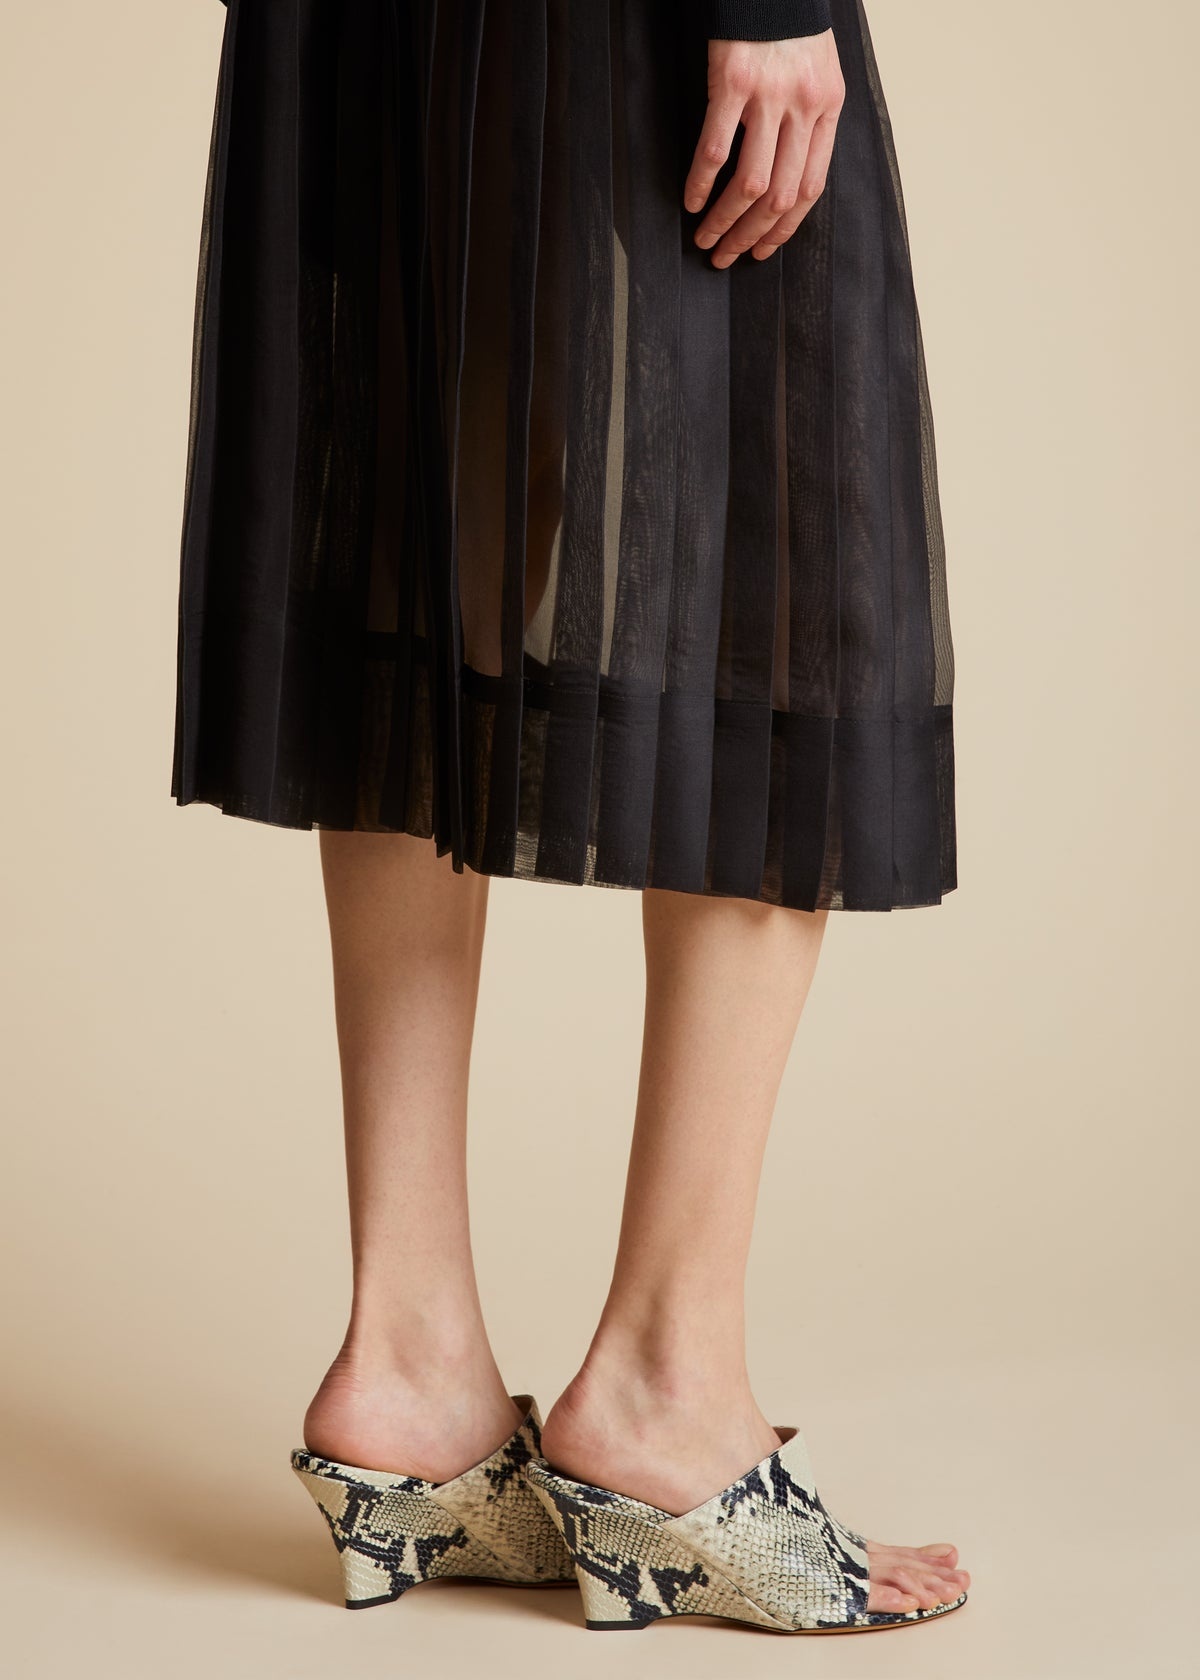 The Tudi Skirt in Black - 5